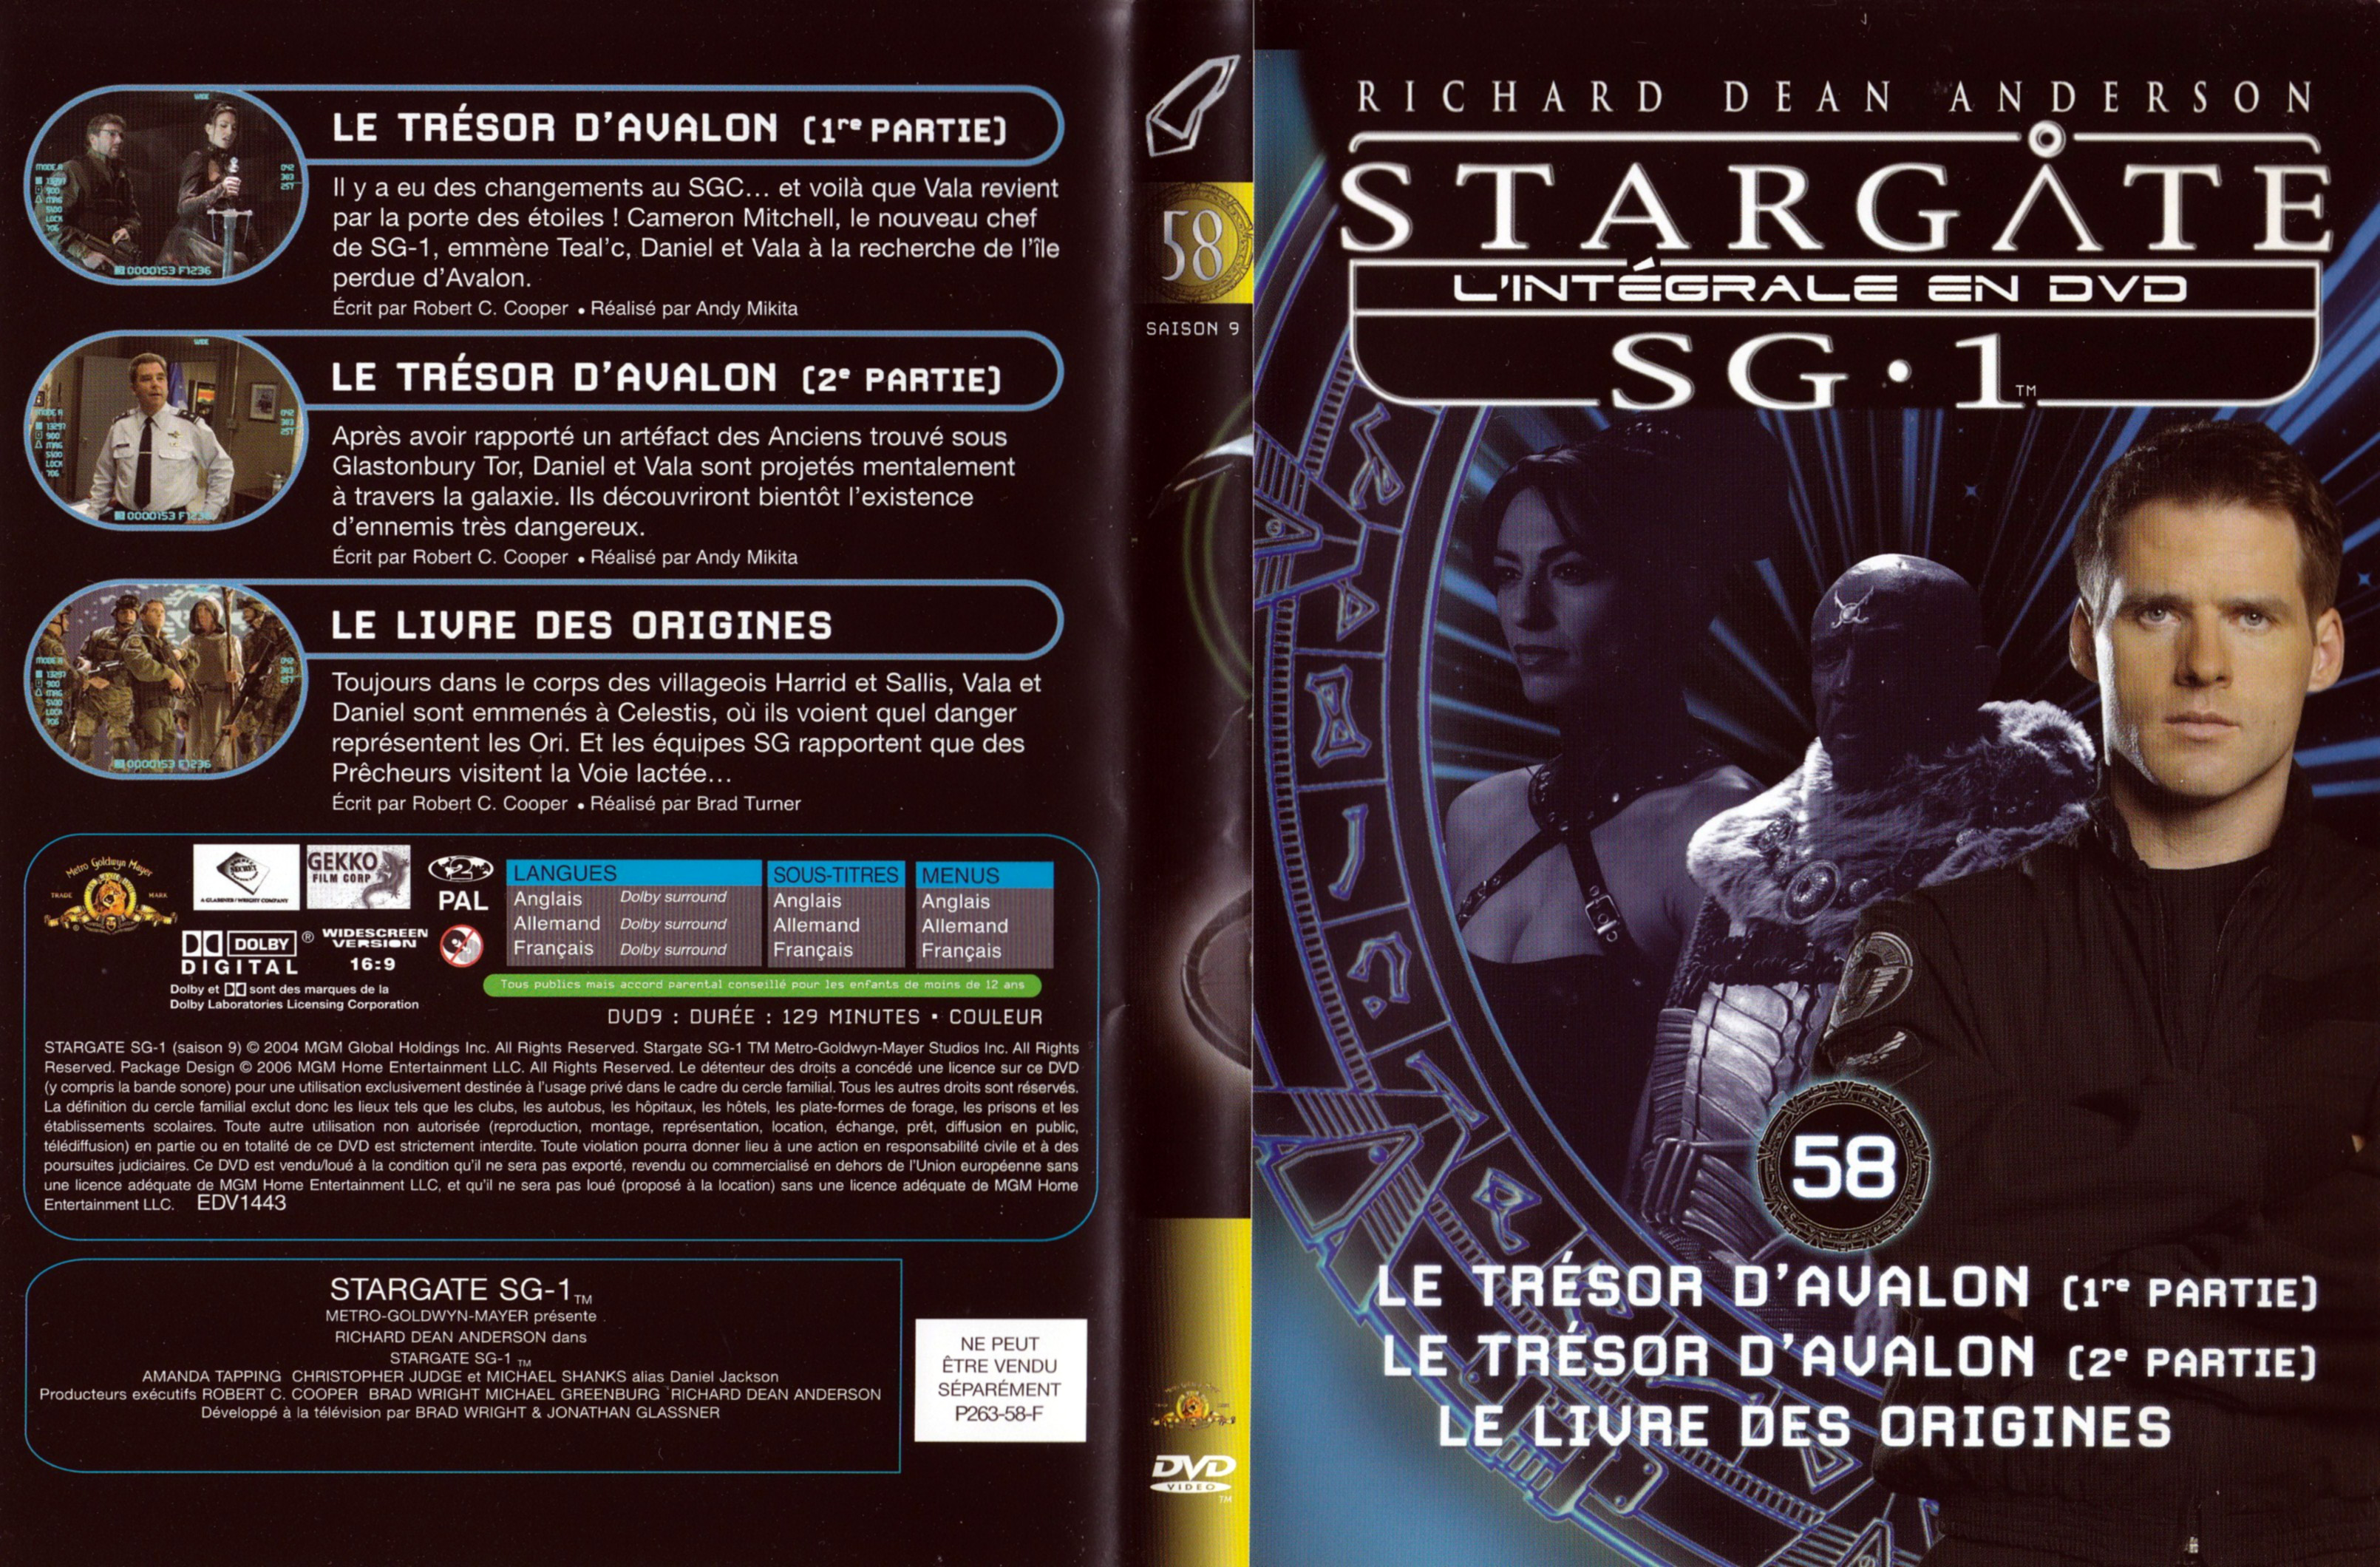 Jaquette DVD Stargate SG1 Intgrale Saison 9 vol 58